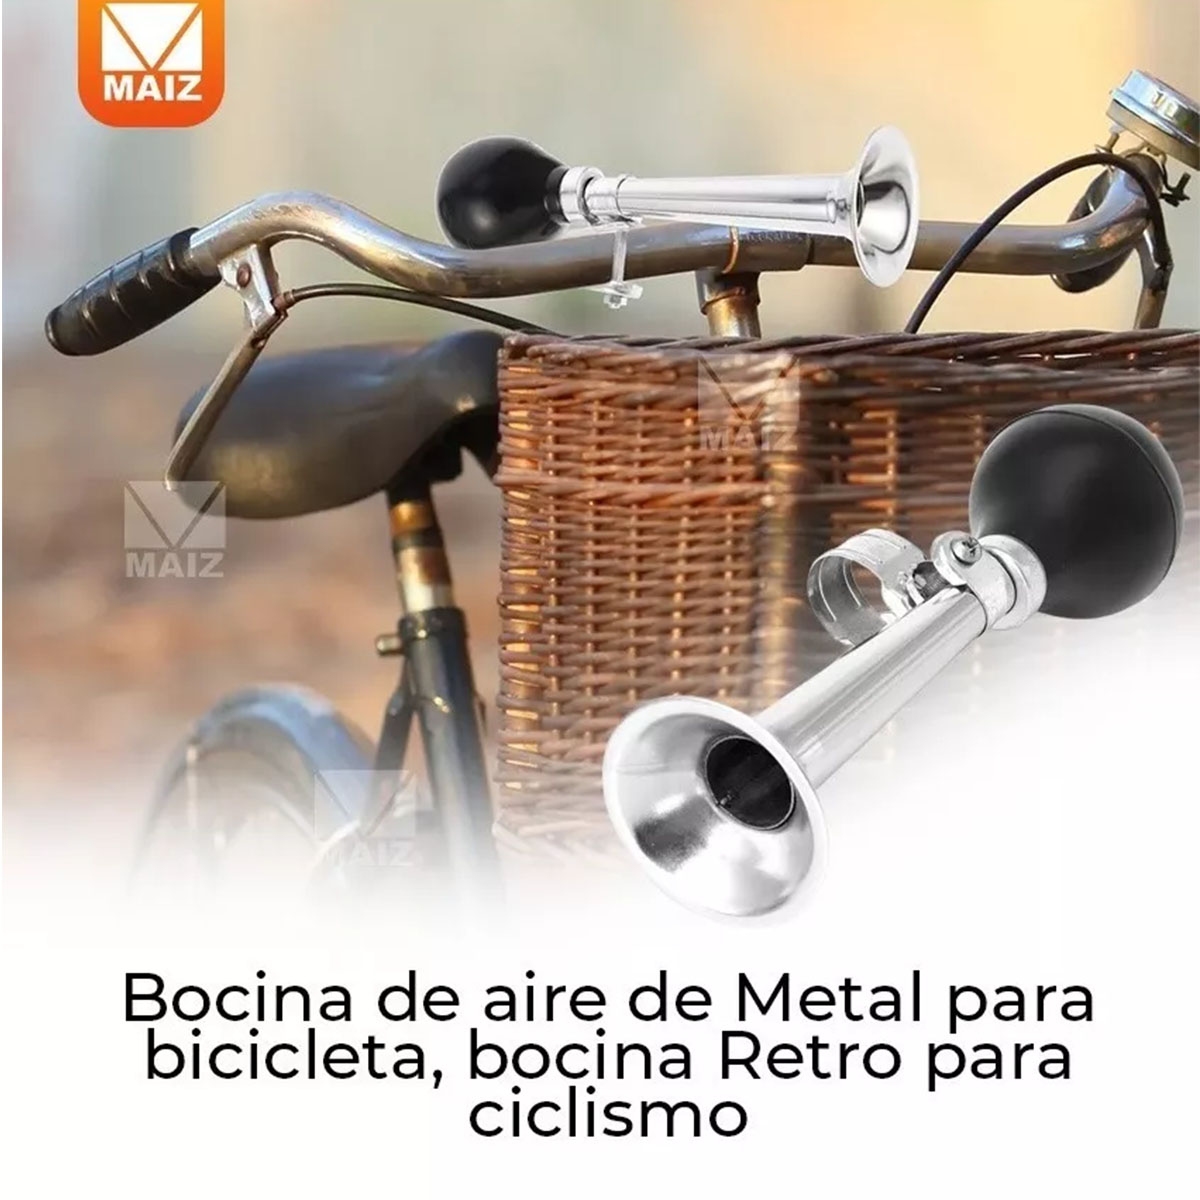 Bocina de aire para ciclos de niños, bocina de bicicleta, bocina de aire,  bocina de bicicleta, bocina de payaso de ciclismo con bombilla para apretar